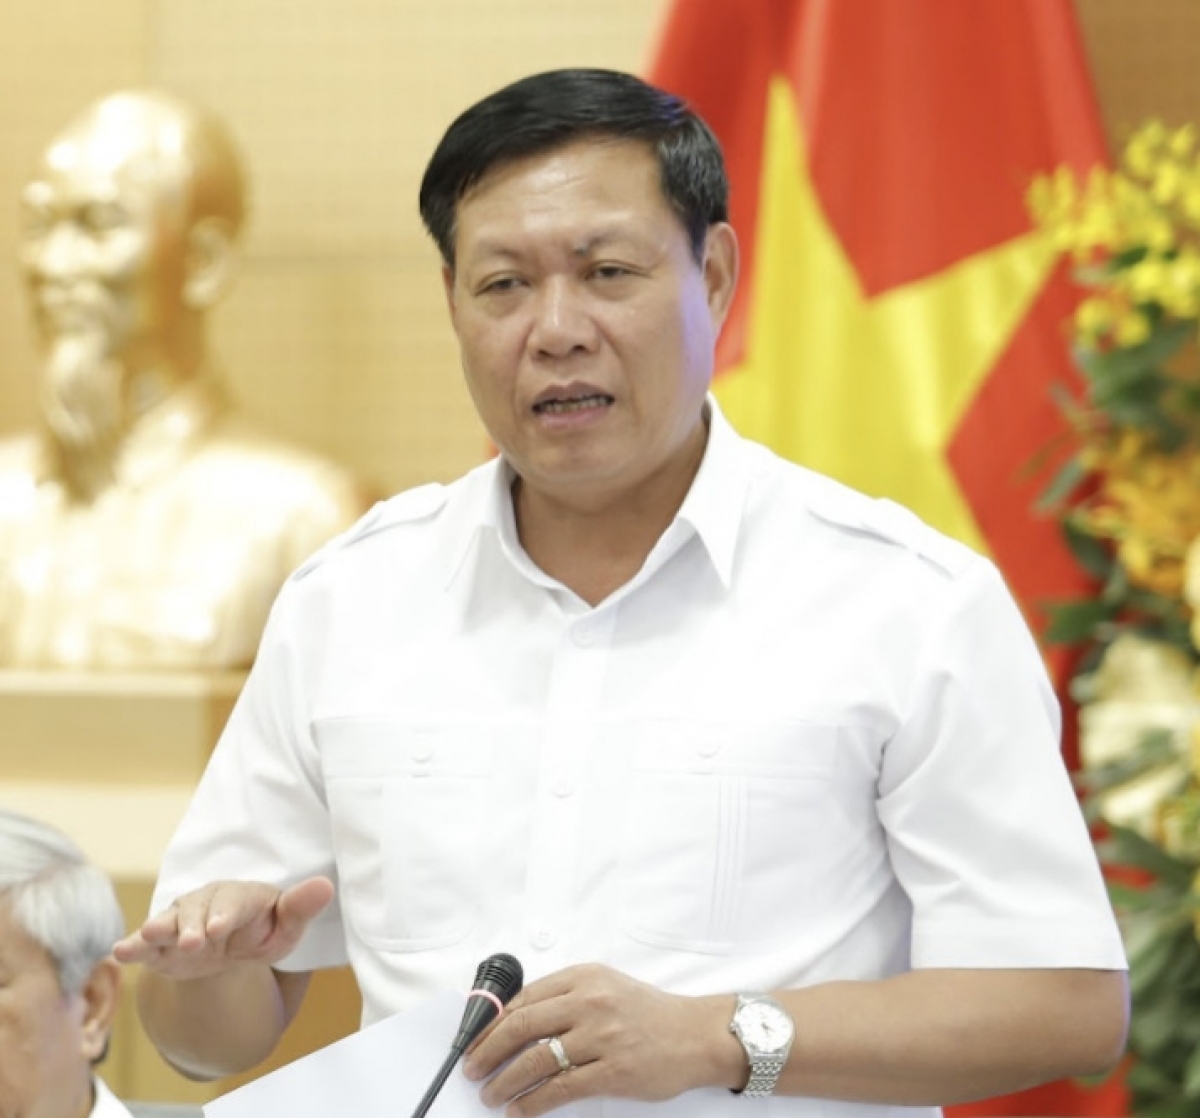 Ông Đỗ Xuân Tuyên, Thứ trưởng Bộ Y tế, chia sẻ về những nỗ lực của Chính phủ Việt Nam trong việc đẩy nhanh tốc độ tiêm chủng vaccine phòng COVID-19 của Việt Nam